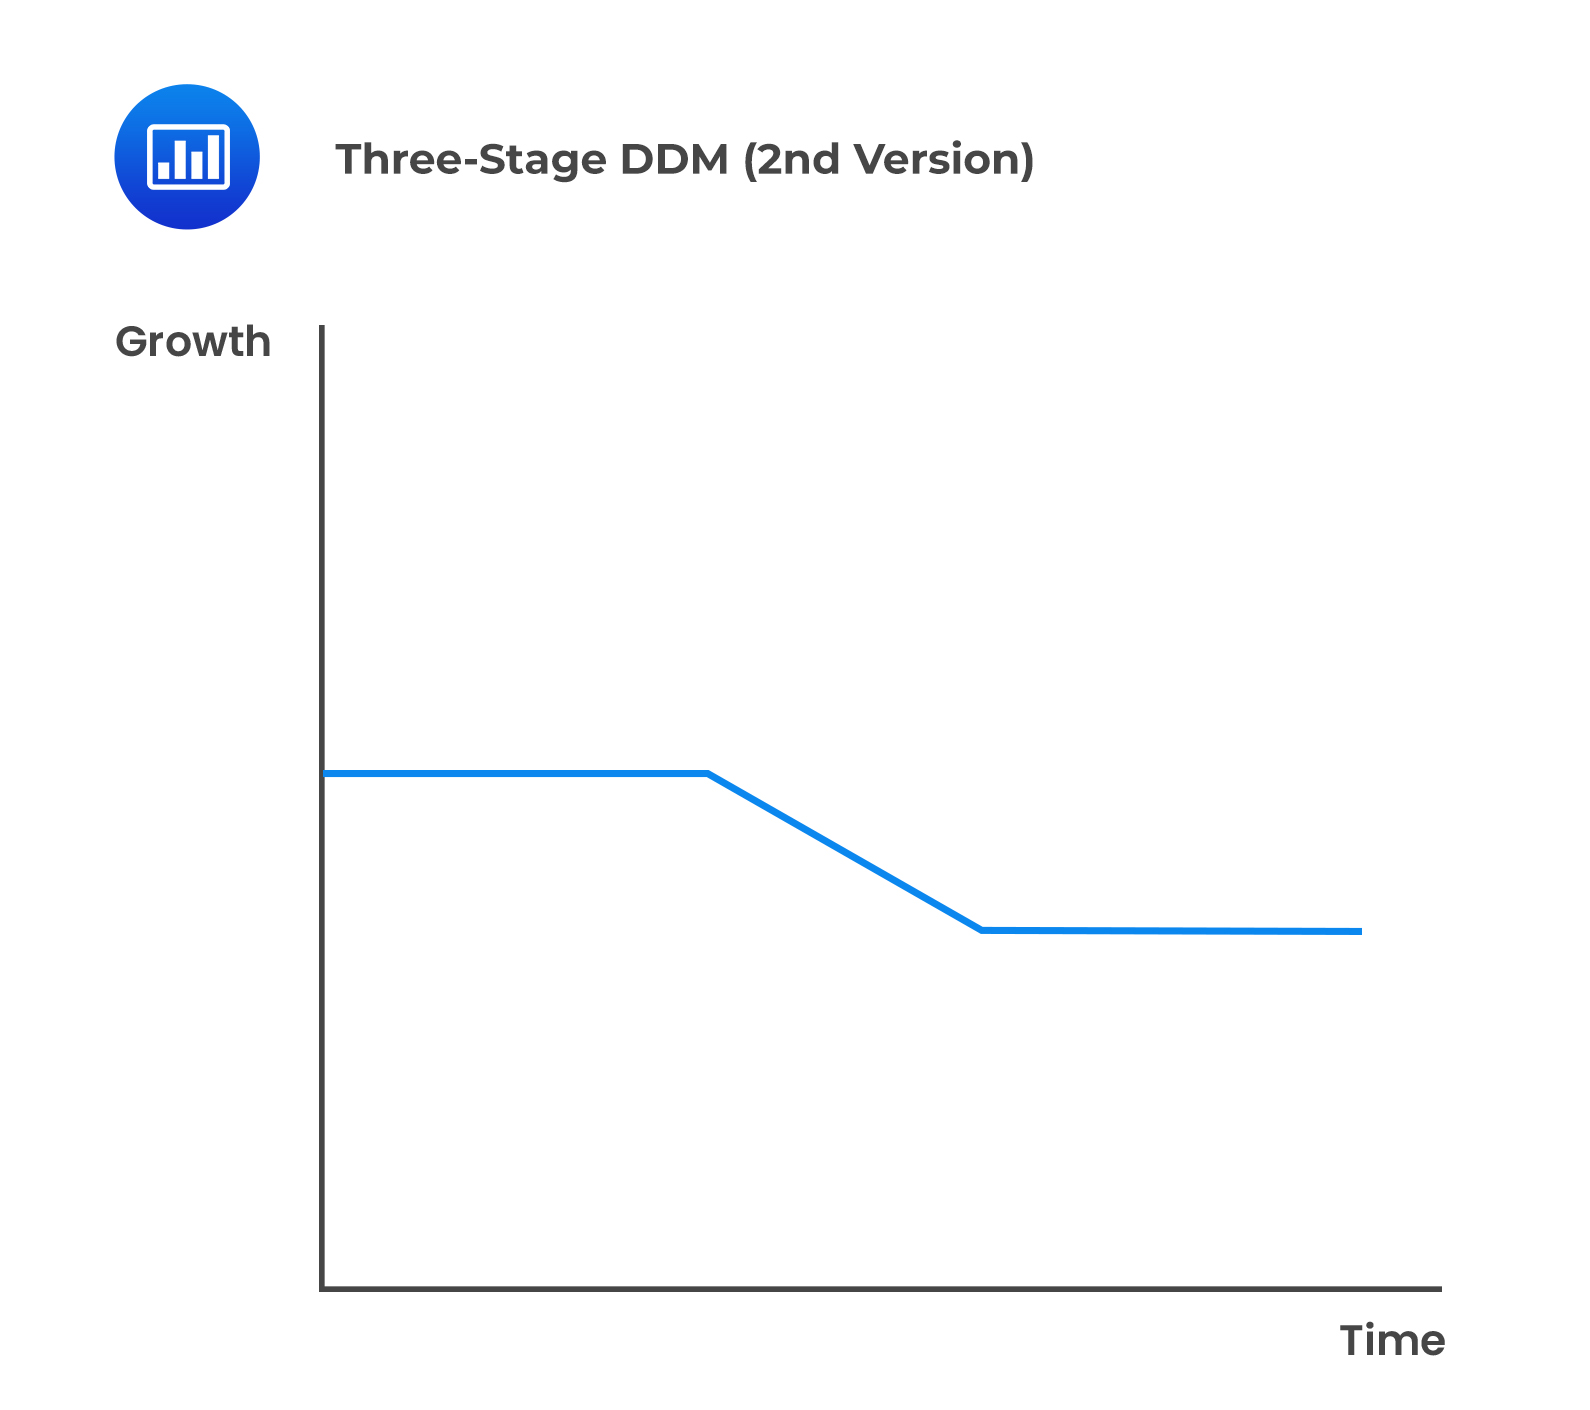 Three-Stage DDM (2nd Version)